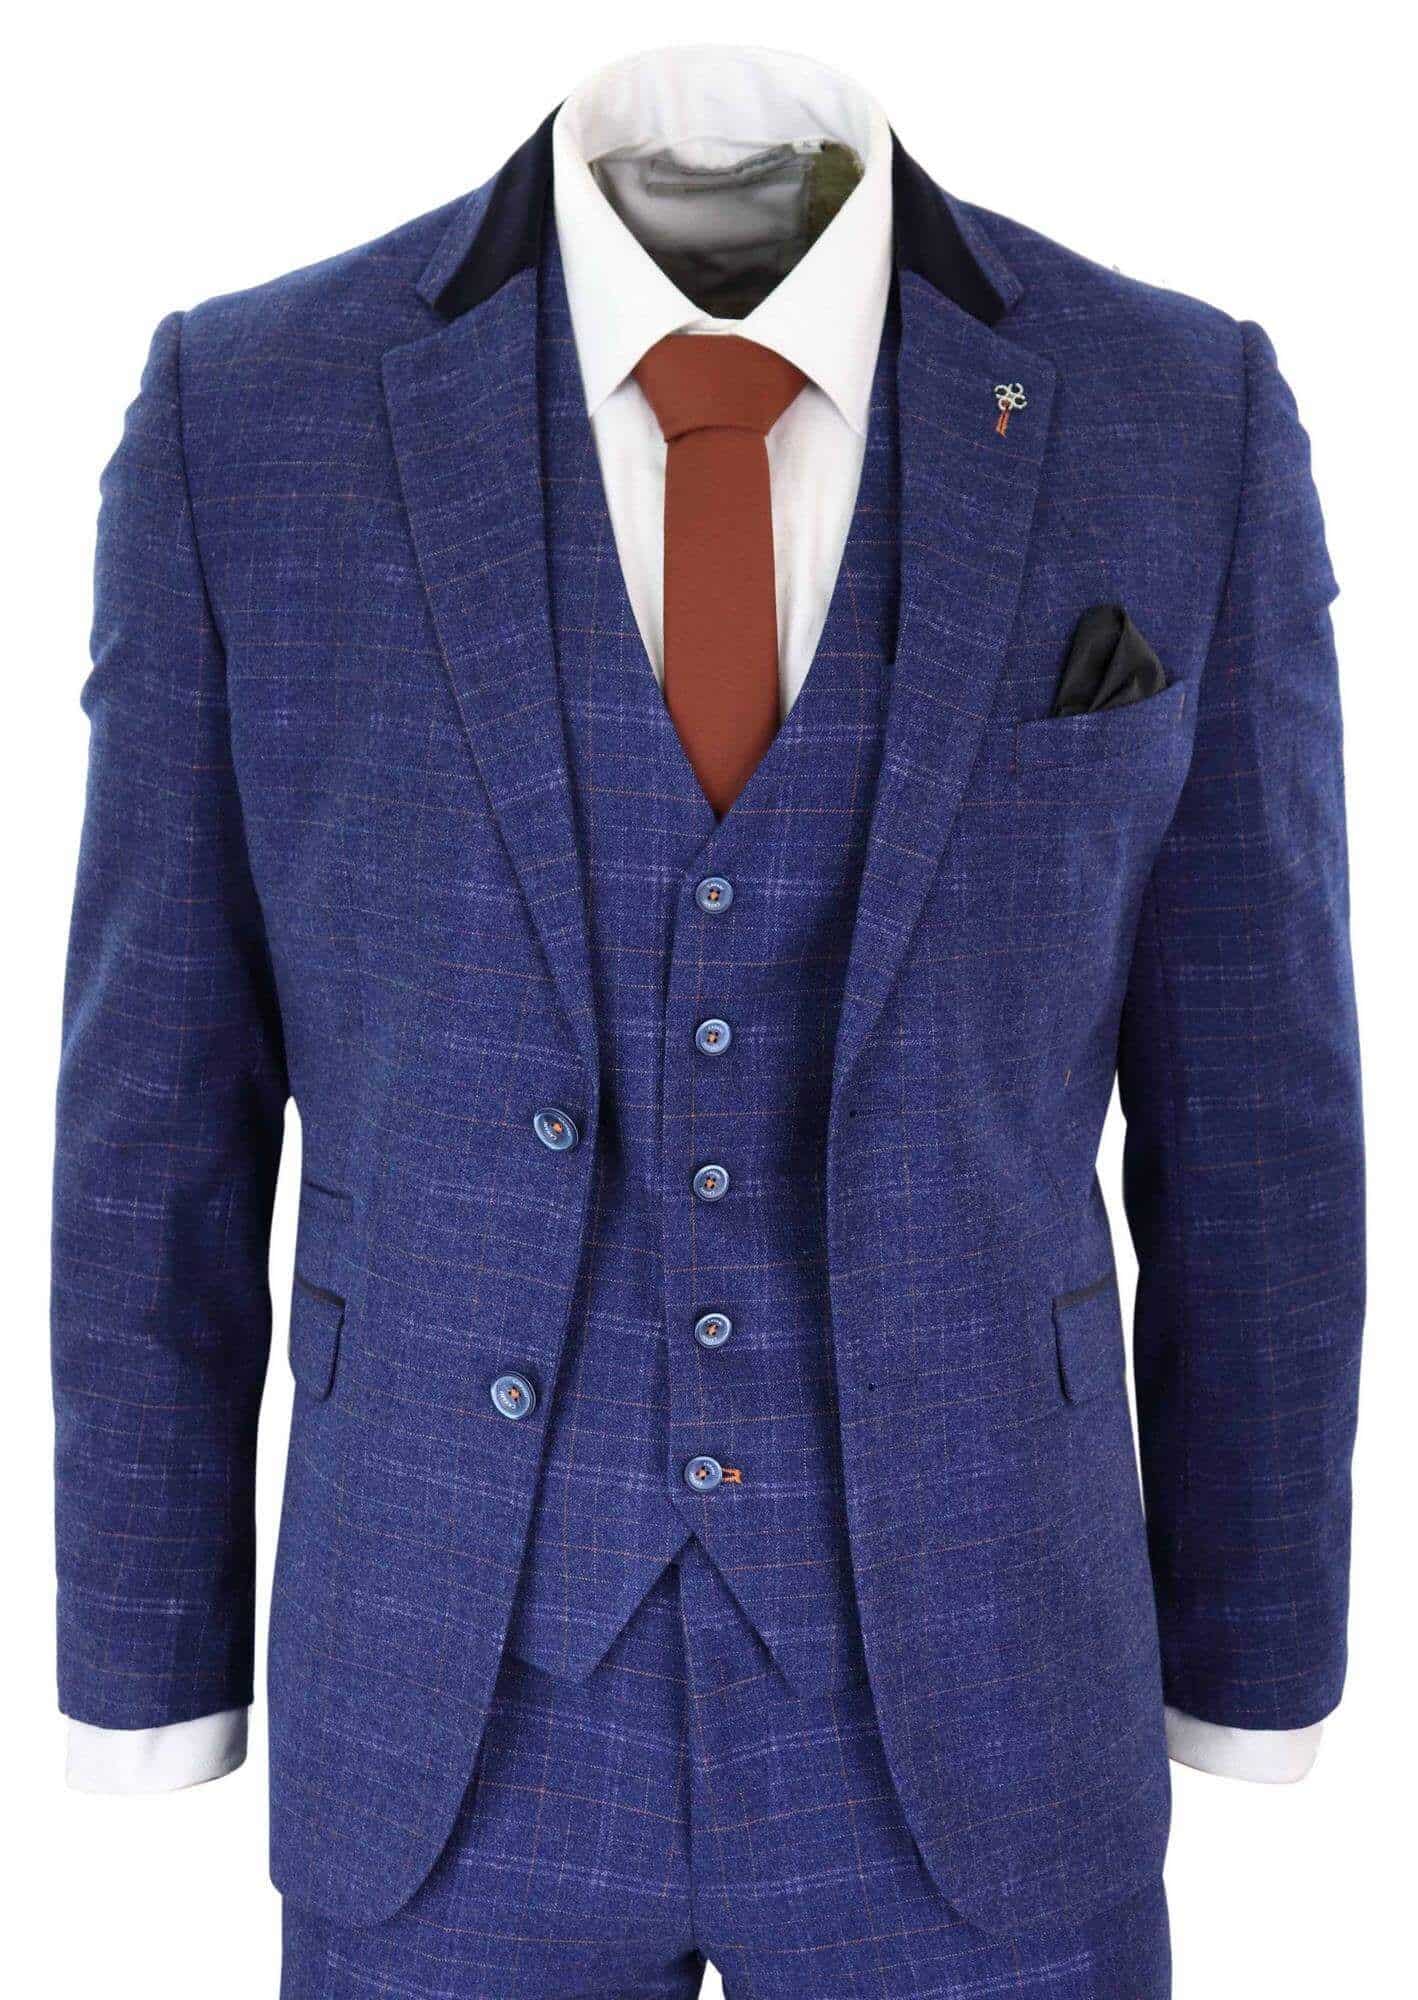 Cavani Kaiser Blue Tweed Three Piece Suit - Formal Tailor